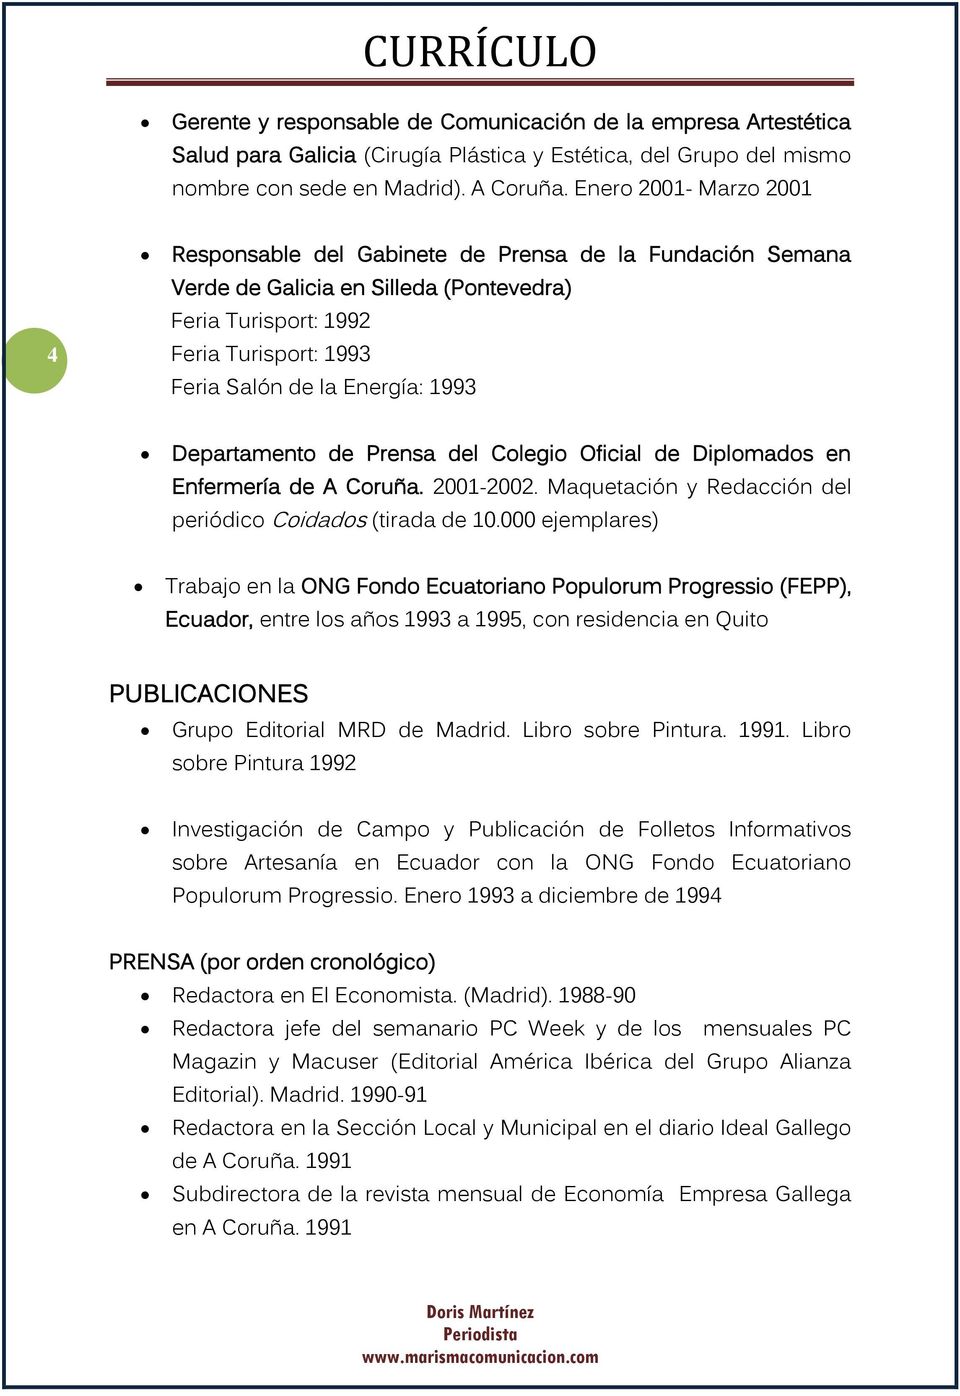 Departamento de Prensa del Colegio Oficial de Diplomados en Enfermería de A Coruña. 2001-2002. Maquetación y Redacción del periódico Coidados (tirada de 10.